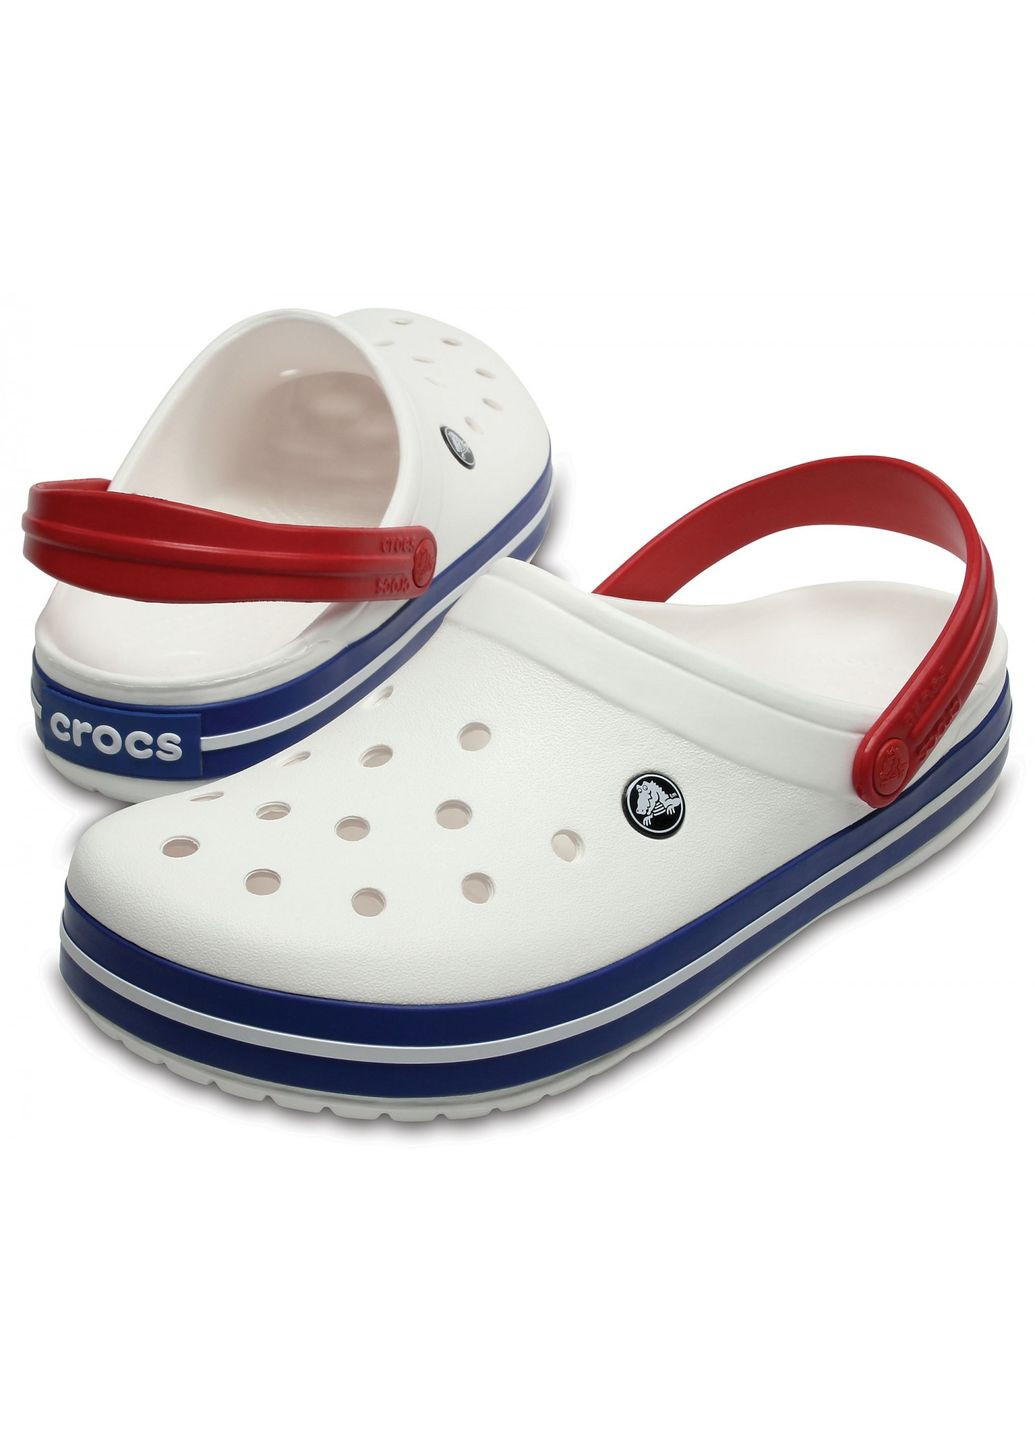 Белые сабо crocband clog white blue m4w6-36-23 см 11016-w Crocs